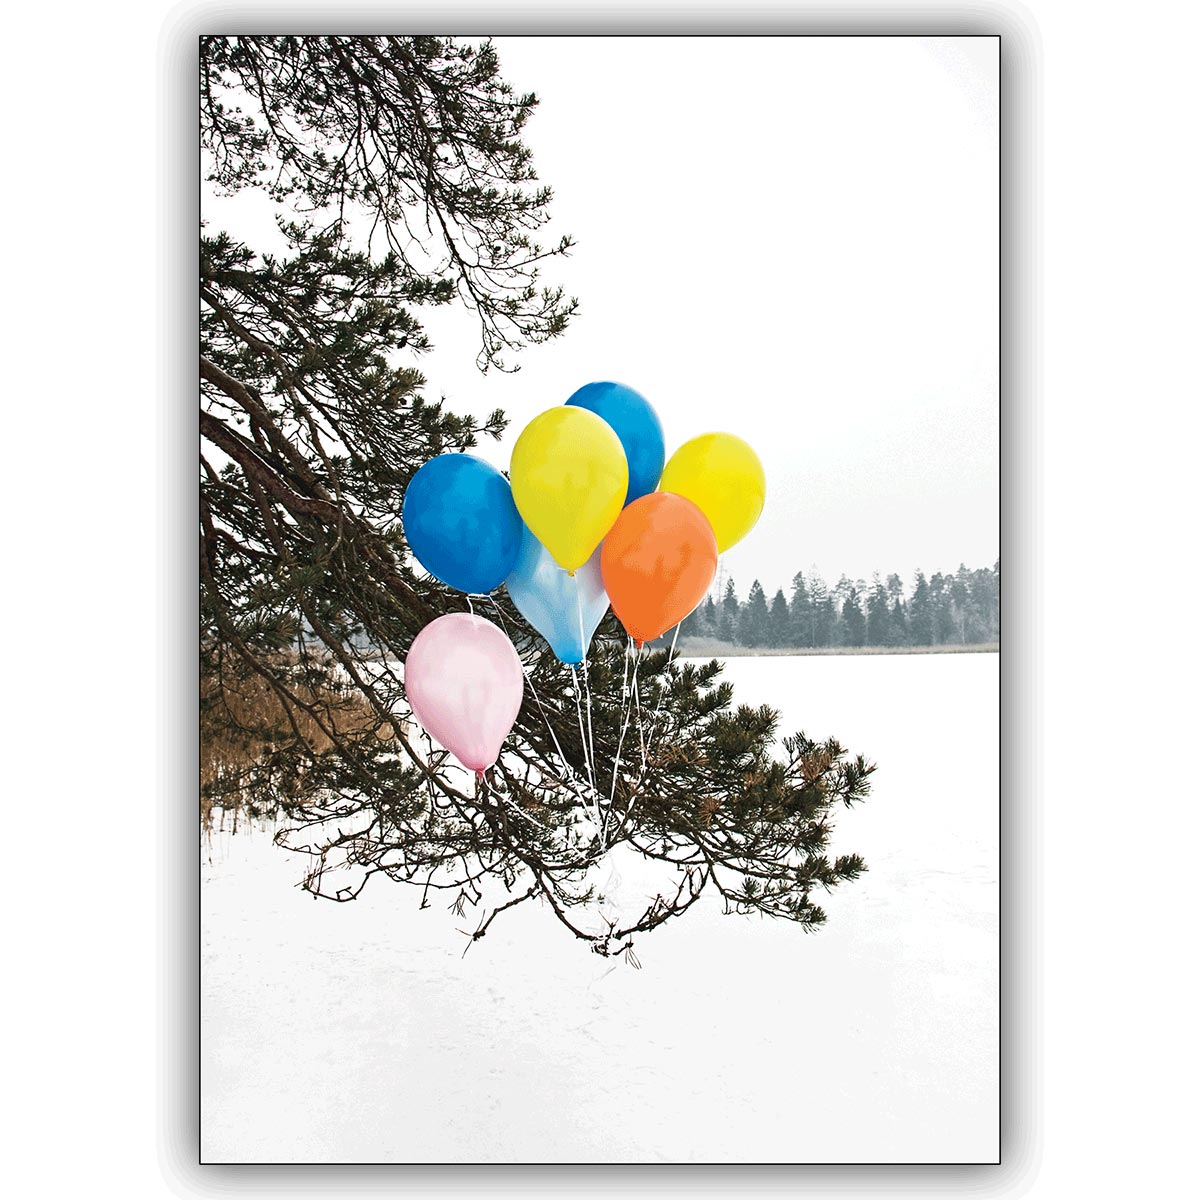 Tolle Foto Grußkarte nicht nur zum Geburtstag: Bunte Luftballons im Schnee